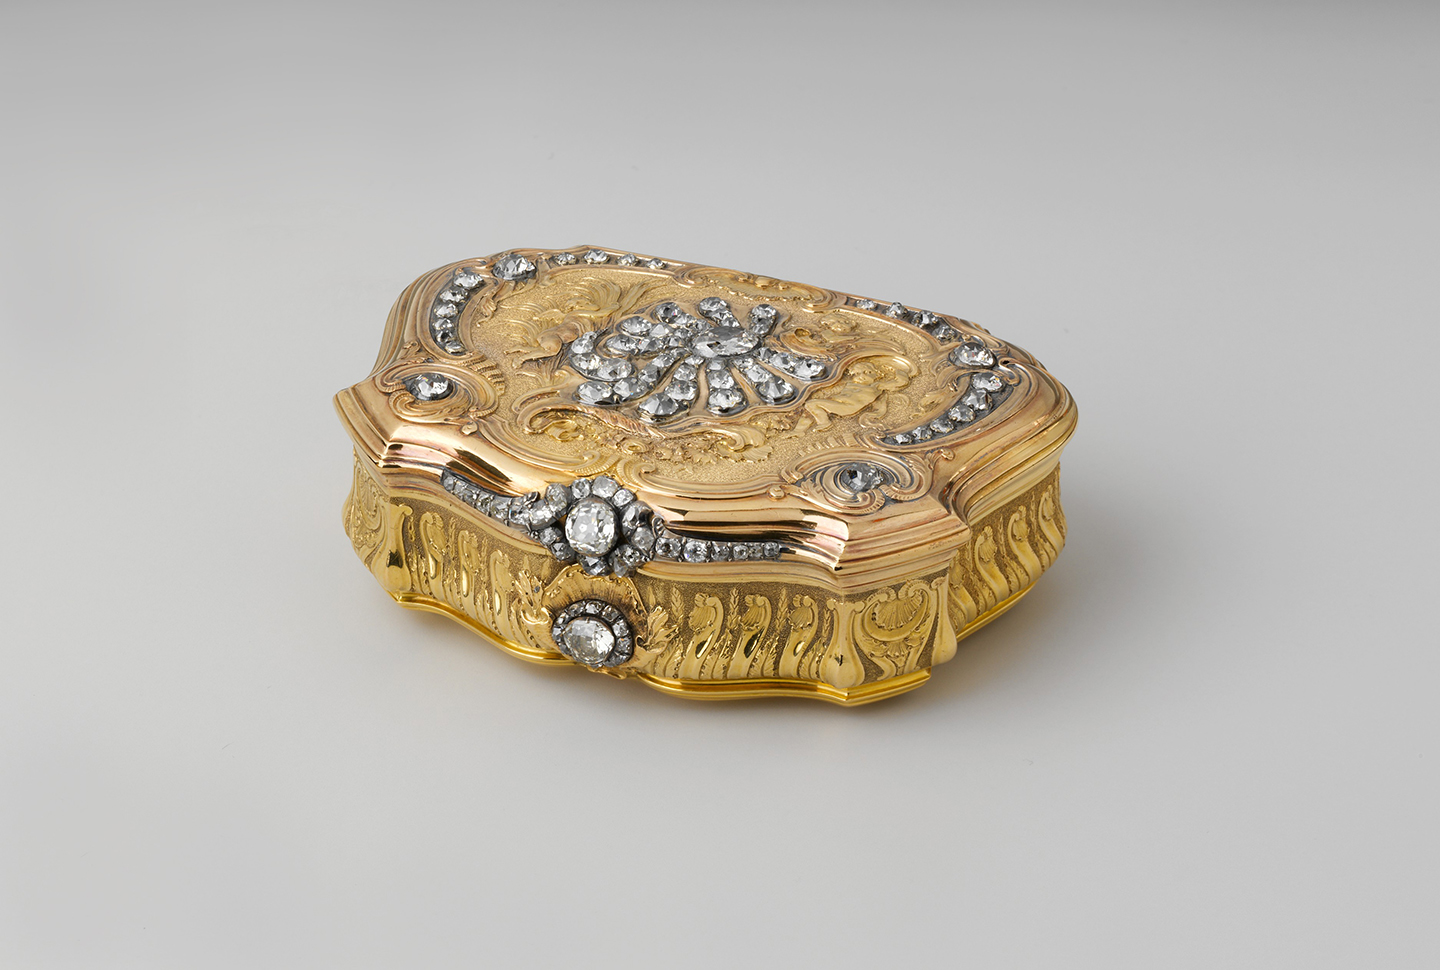 Hộp đựng thuốc lá, năm 1734–1735, Daniel Gouers. Vàng, kim cương; kích thước 25mm x 80mm x 60mm. Bảo tàng Nghệ thuật Metropolitan, thành phố New York. (Ảnh: Tài liệu công cộng)